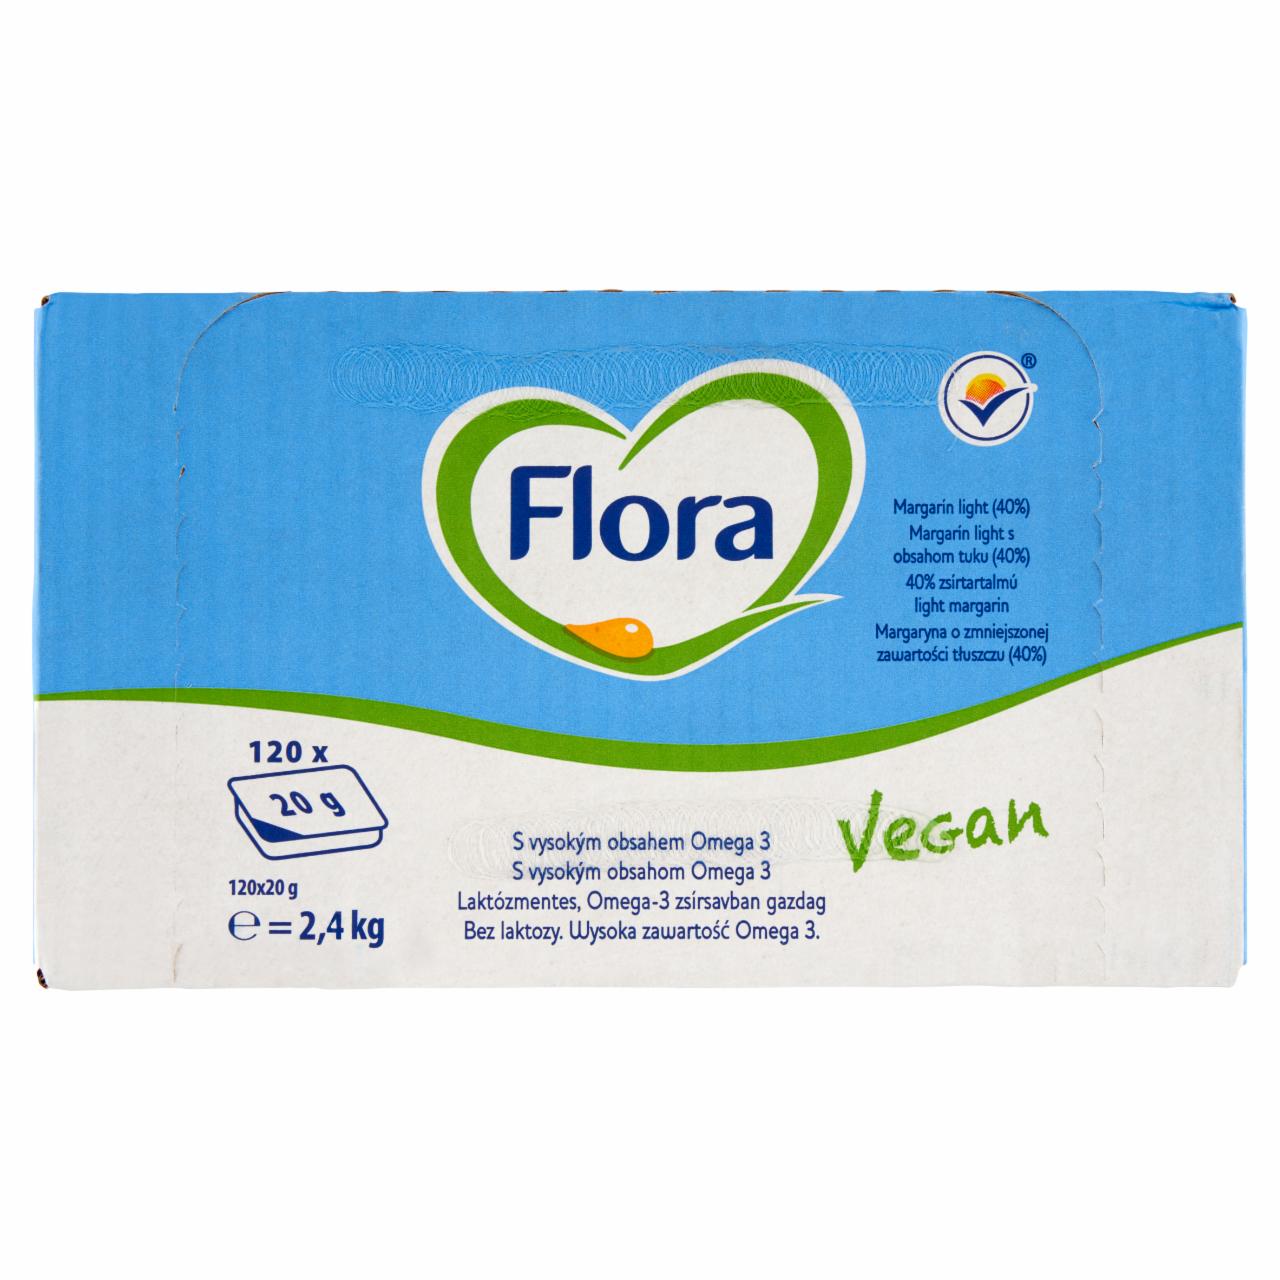 Képek - Flora 40% zsírtartalmú light margarin 120 x 20 g (2,4 kg)